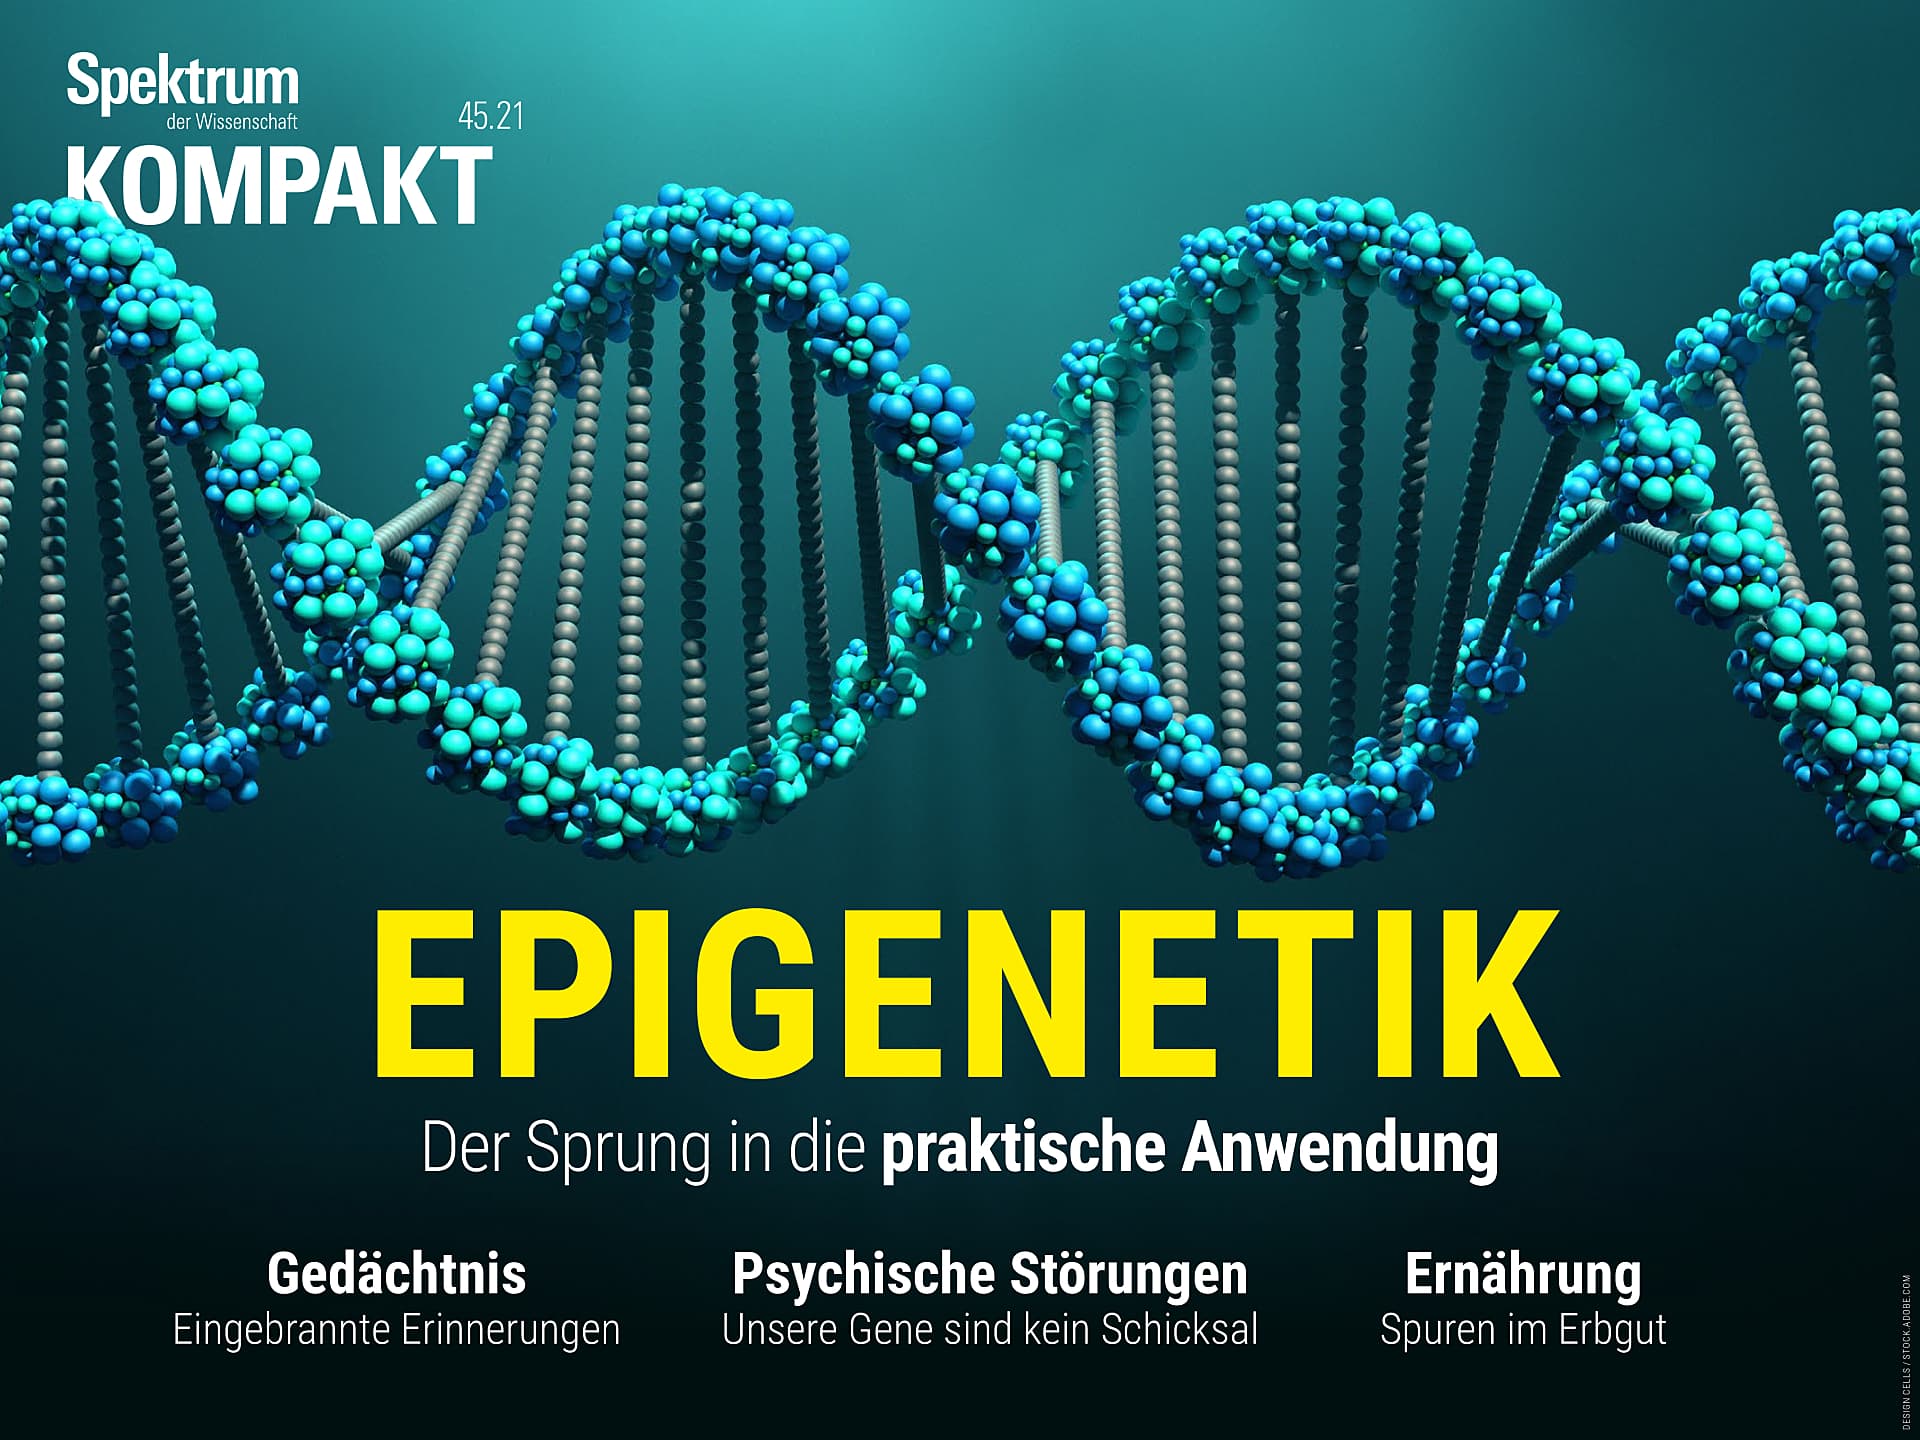 Epigenetik - Der Sprung in die praktische Anwendung